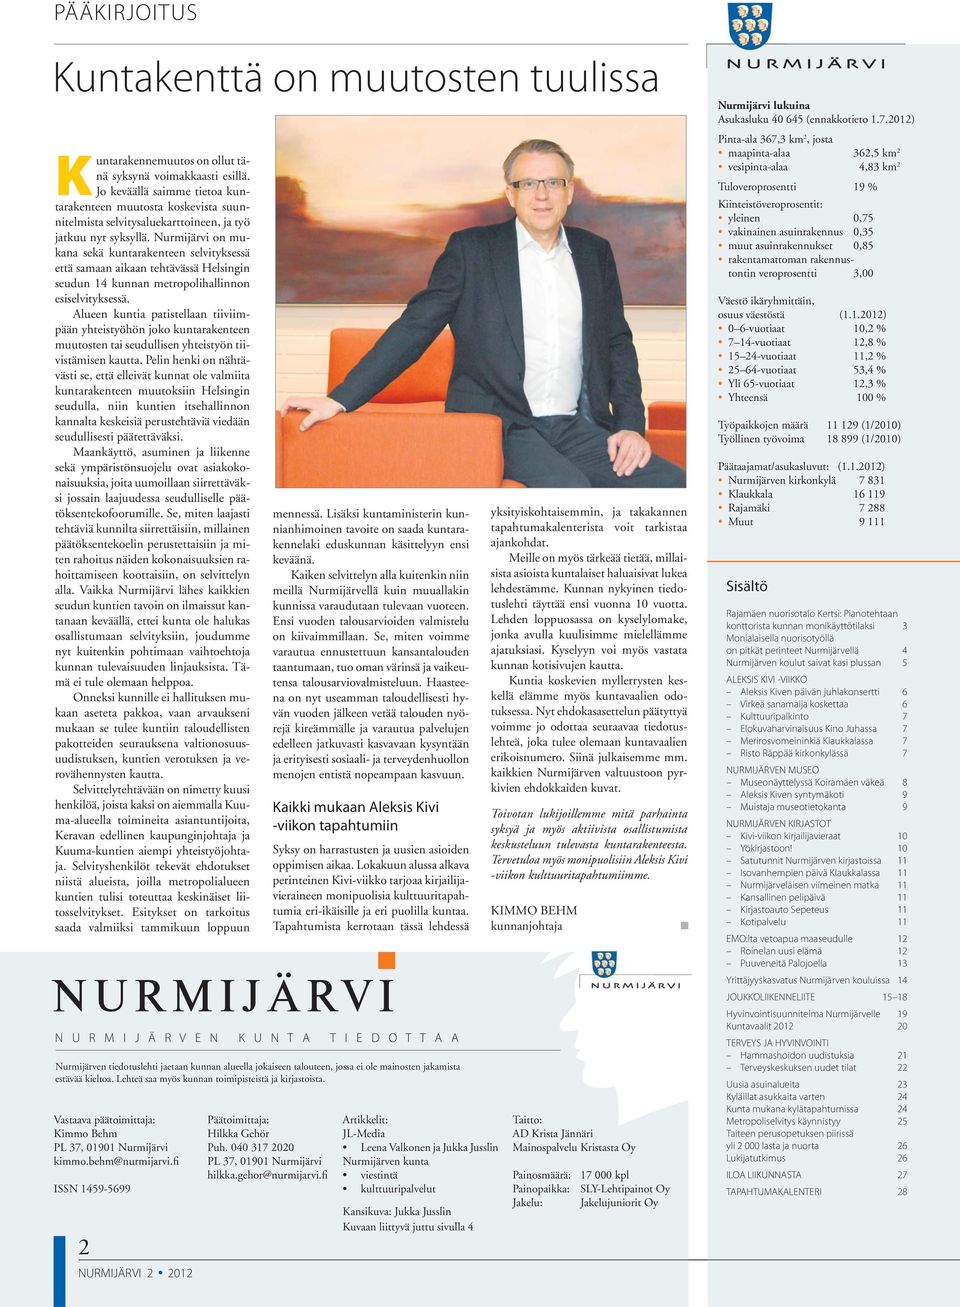 Nurmijärvi on mukana sekä kuntarakenteen selvityksessä että samaan aikaan tehtävässä Helsingin seudun 14 kunnan metropolihallinnon esiselvityksessä.